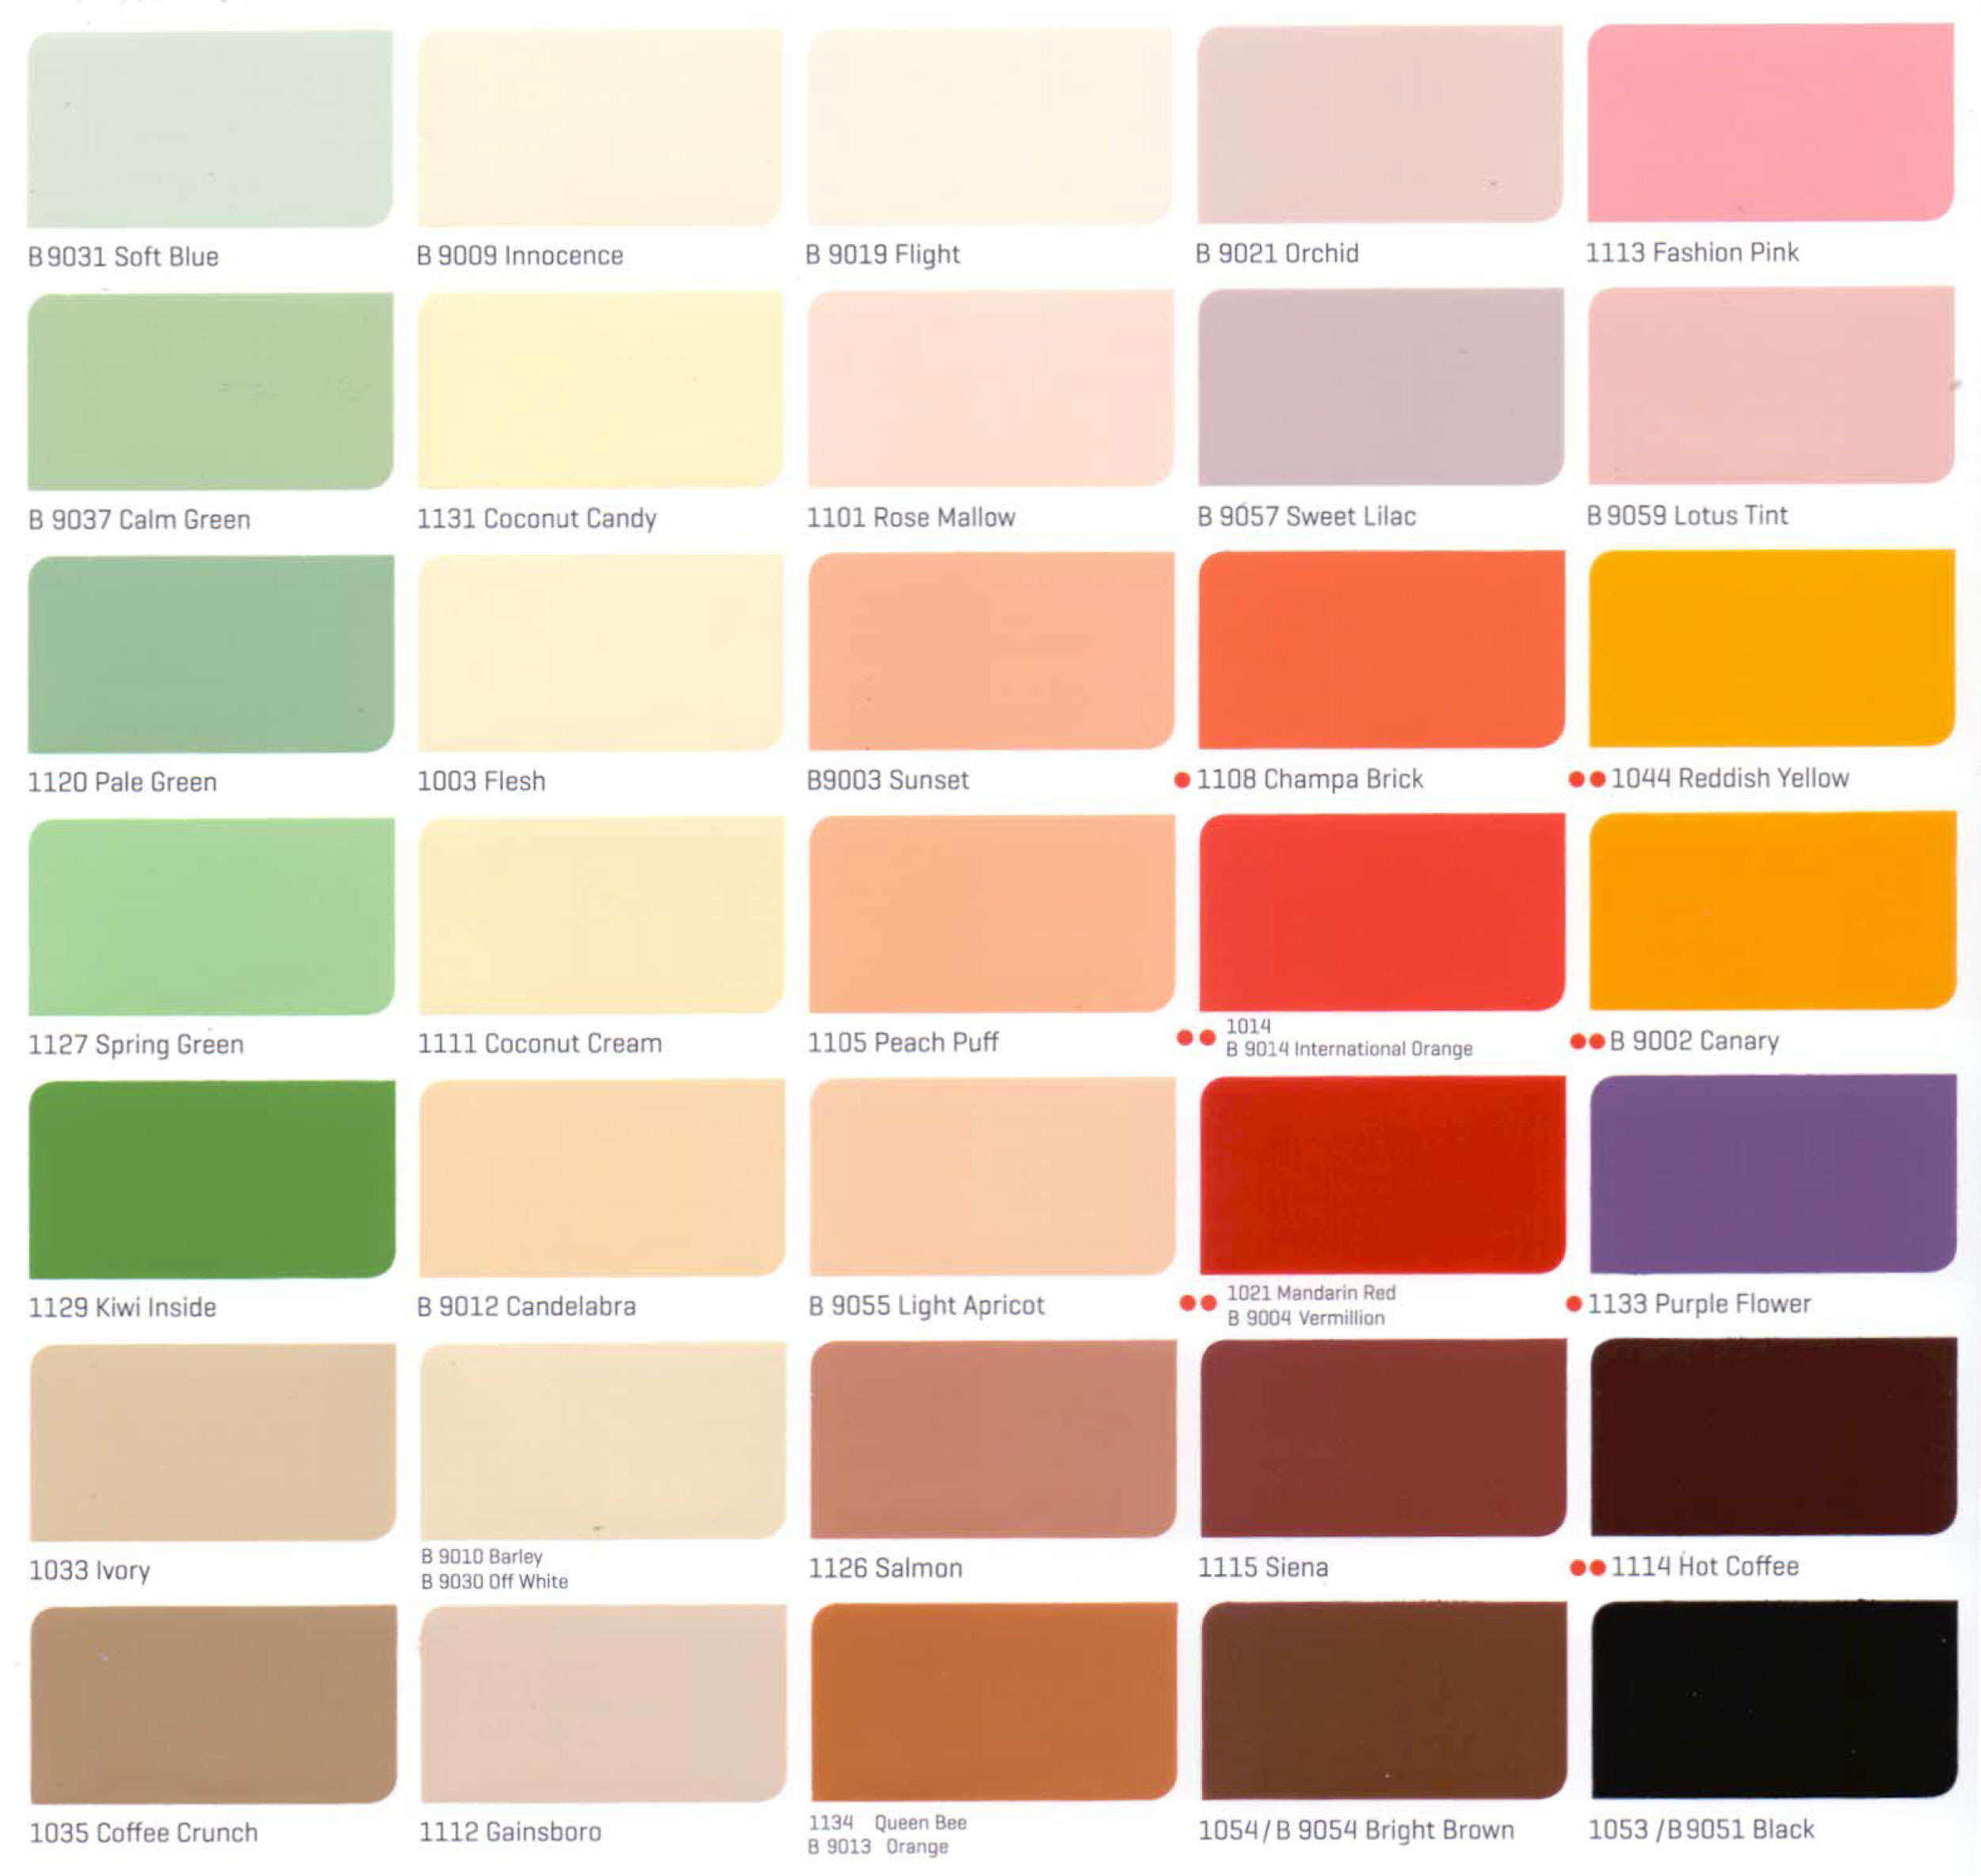 Bảng màu sơn Nippon nội thất có bao nhiêu màu?
